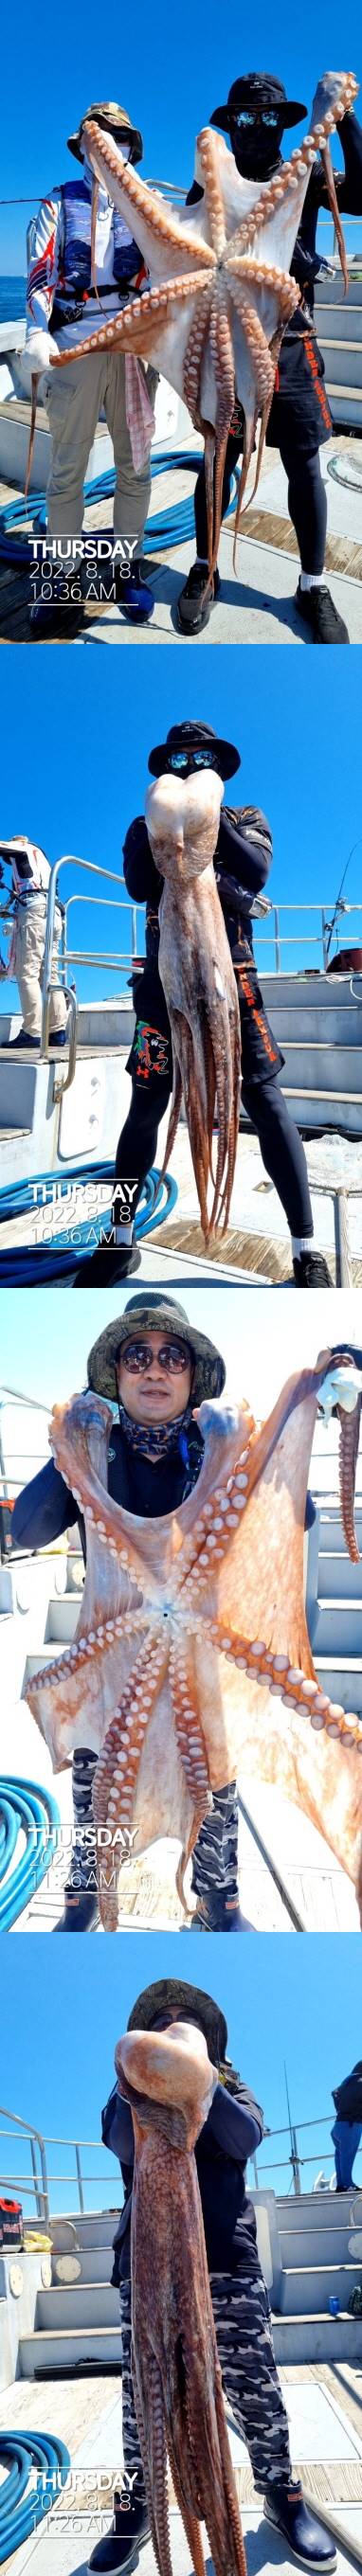 22인승 돌핀호 대왕문어 낚시 대~박 조황입니다.